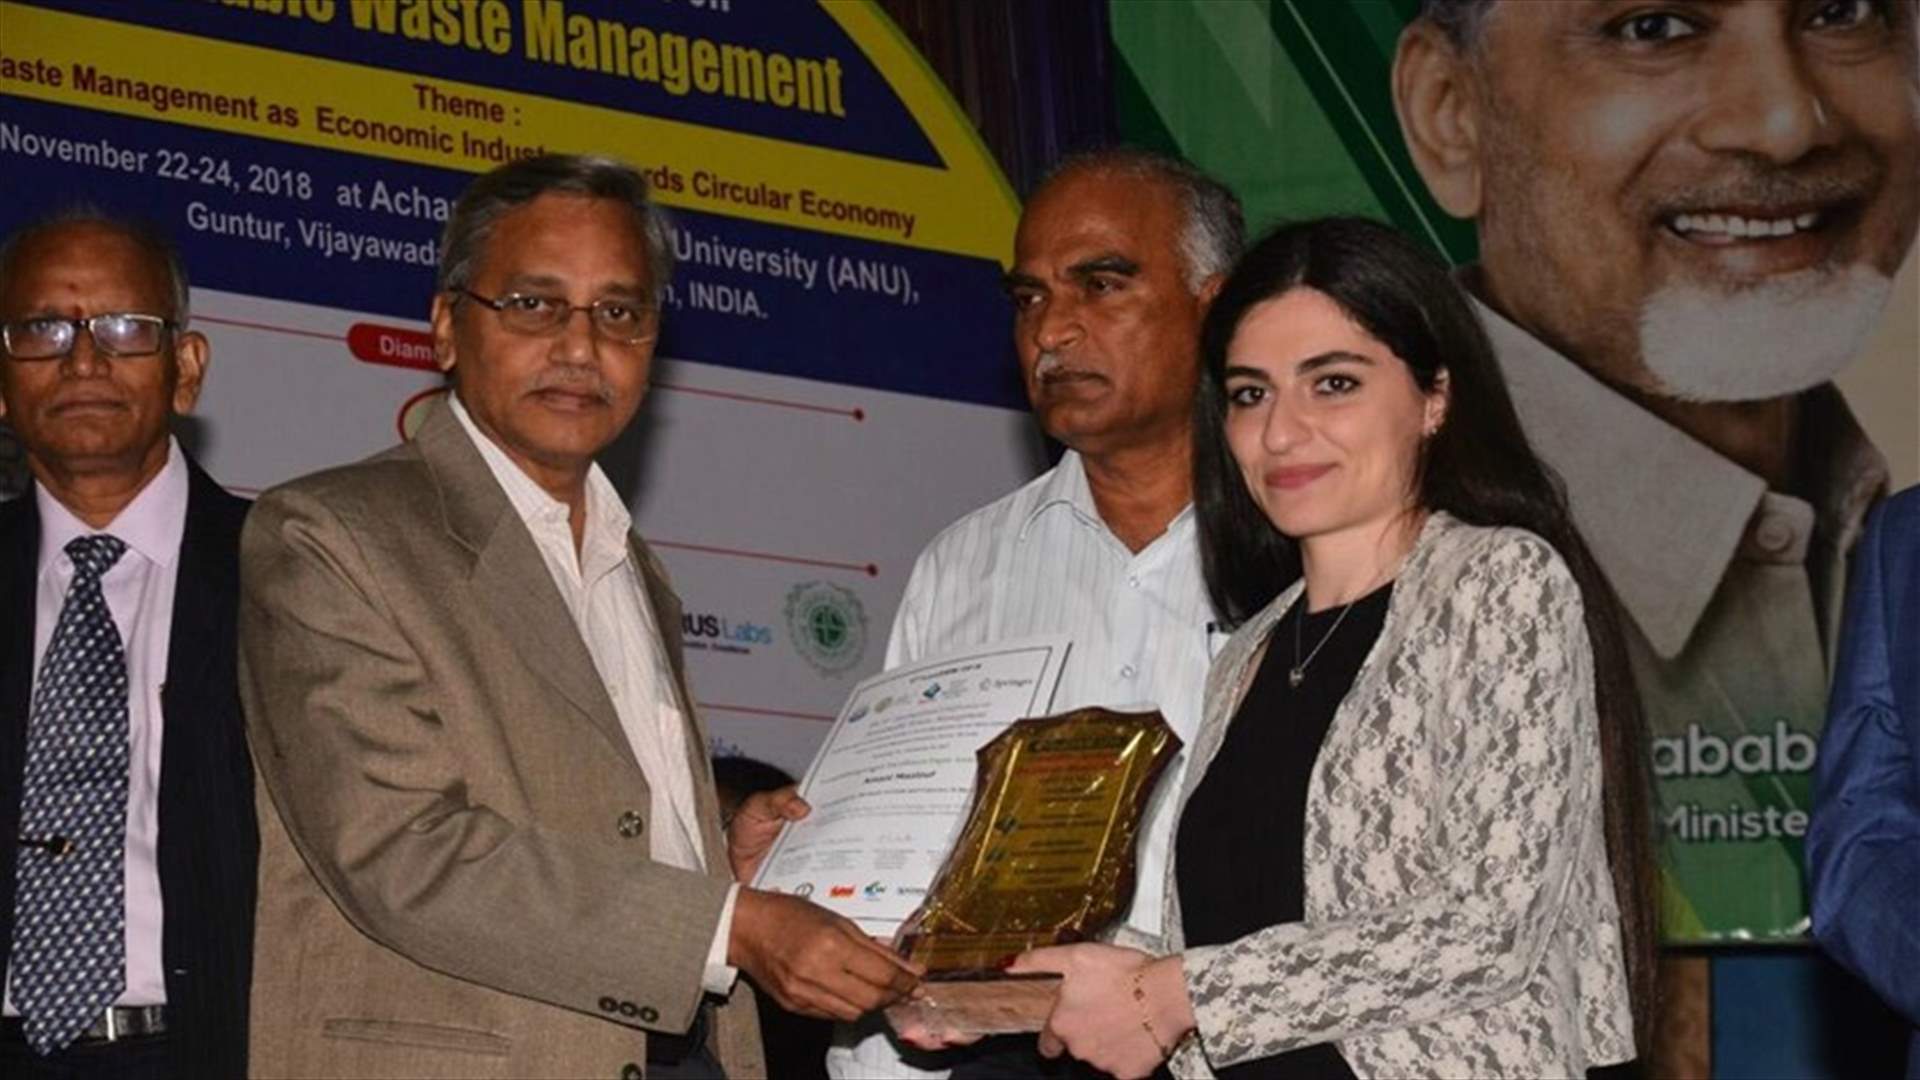 مؤتمر دولي في الهند حول ادارة النفايات... وجائزة أفضل بحث لاماني معلوف